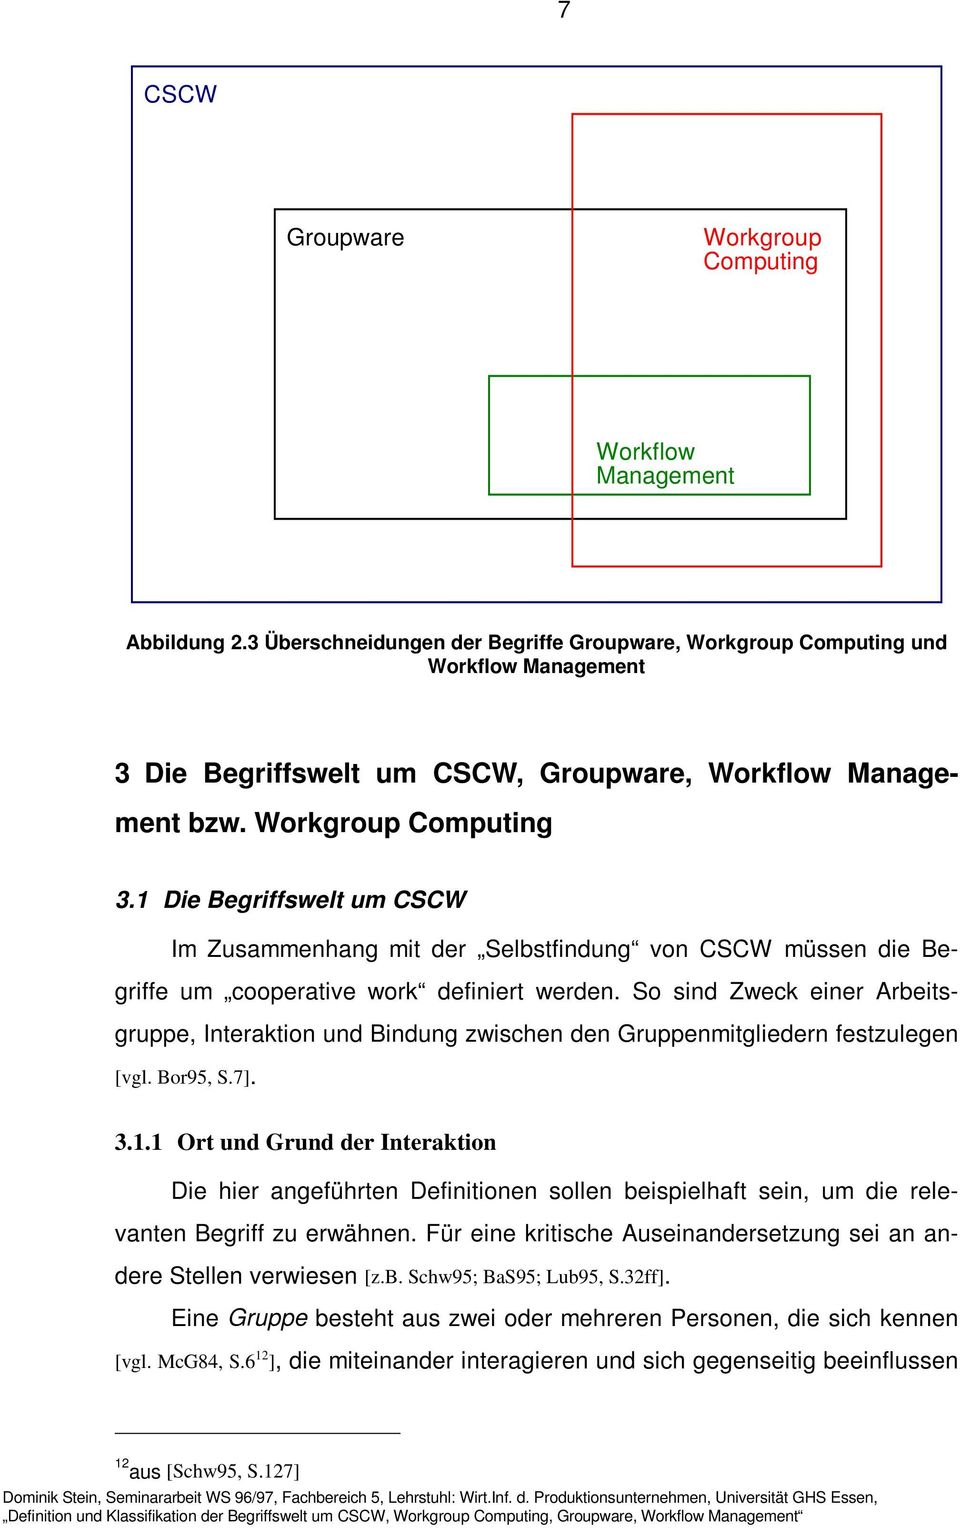 1 Die Begriffswelt um CSCW Im Zusammenhang mit der Selbstfindung von CSCW müssen die Begriffe um cooperative work definiert werden.